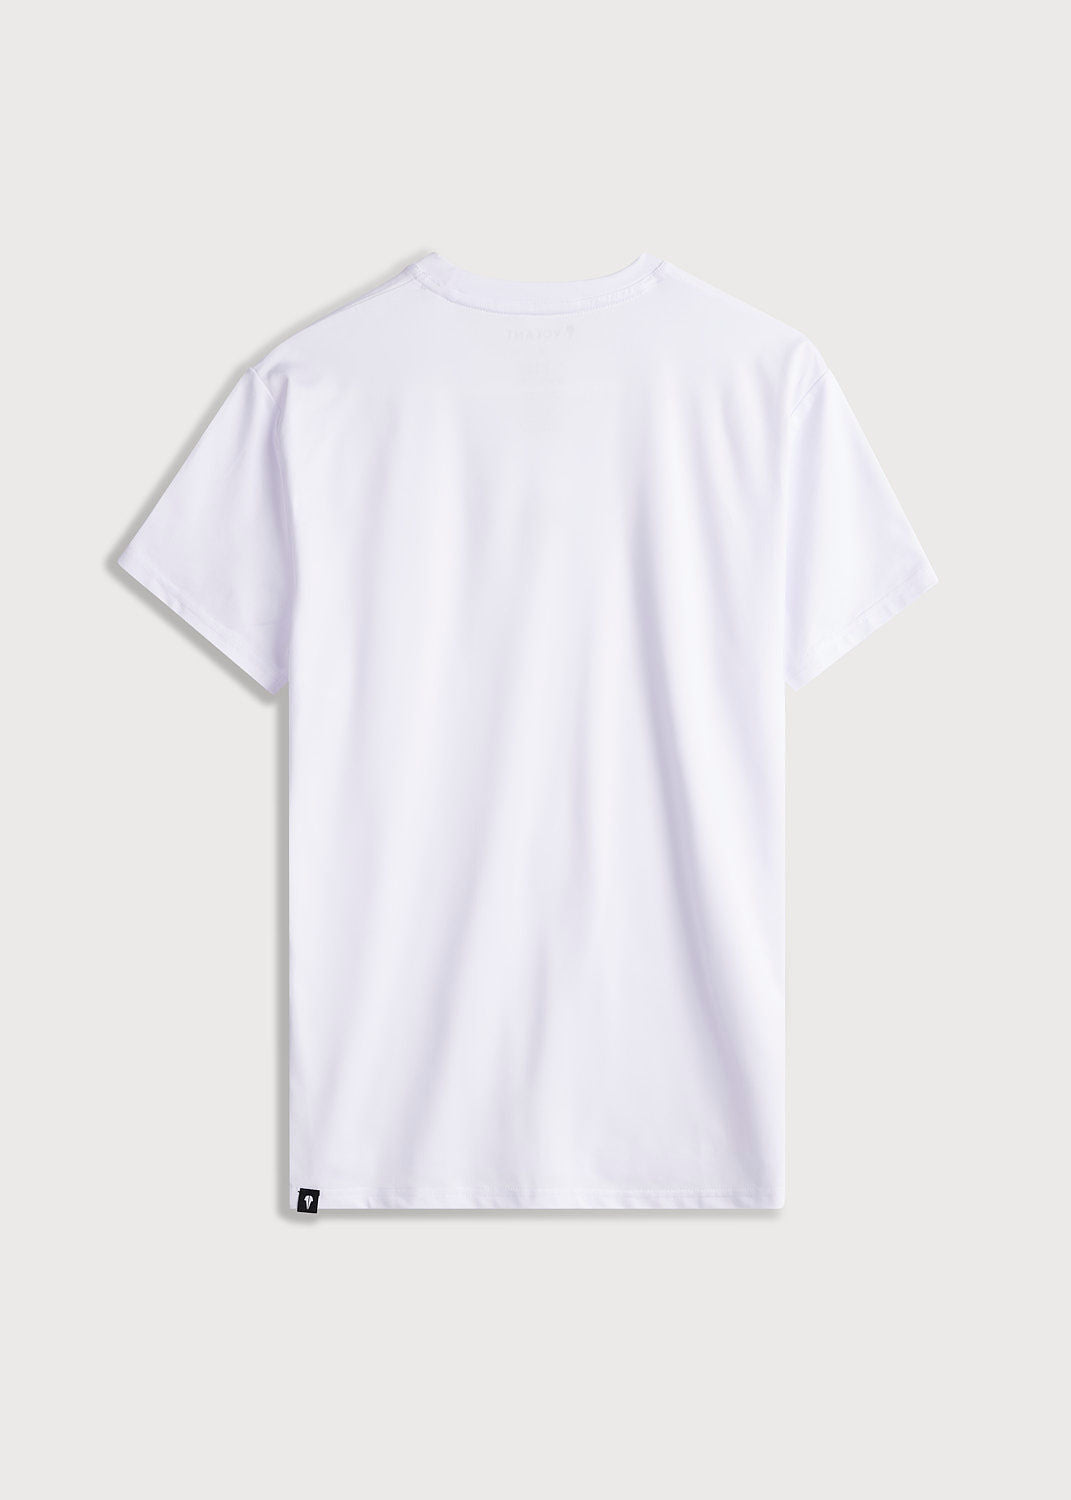 Active Hero Badminton T-Shirt